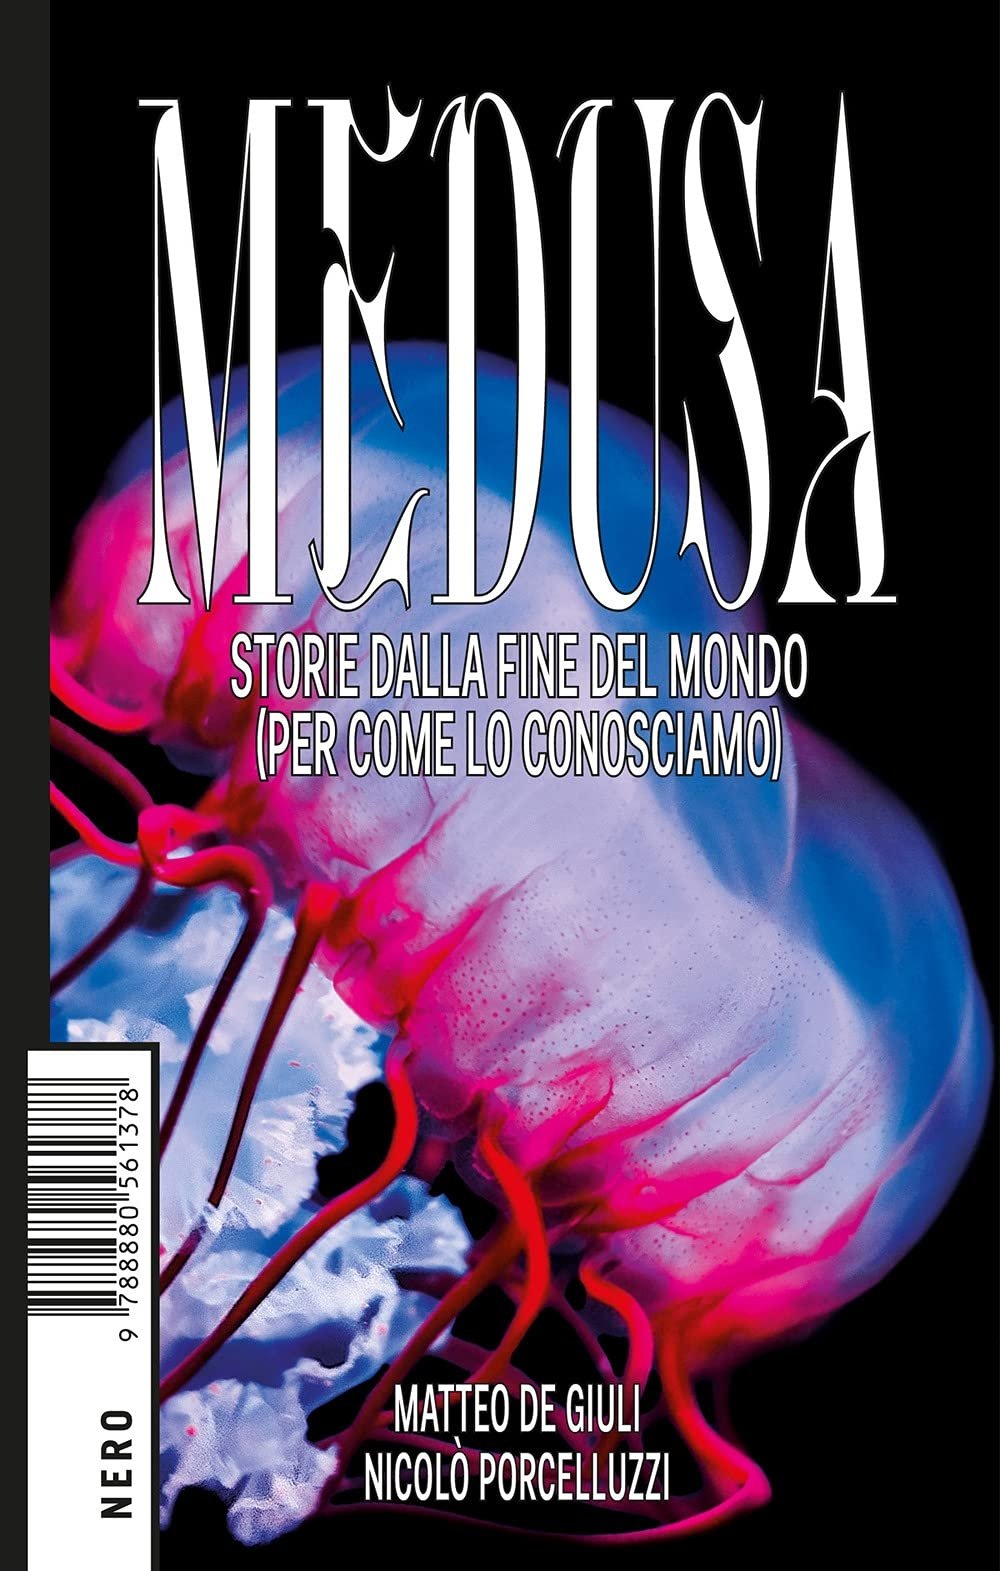 Matteo De Giuli, Nicolò Porcelluzzi ‒ Medusa. Storie dalla fine del mondo (per come lo conosciamo) (NERO Not Editions, Roma 2021)